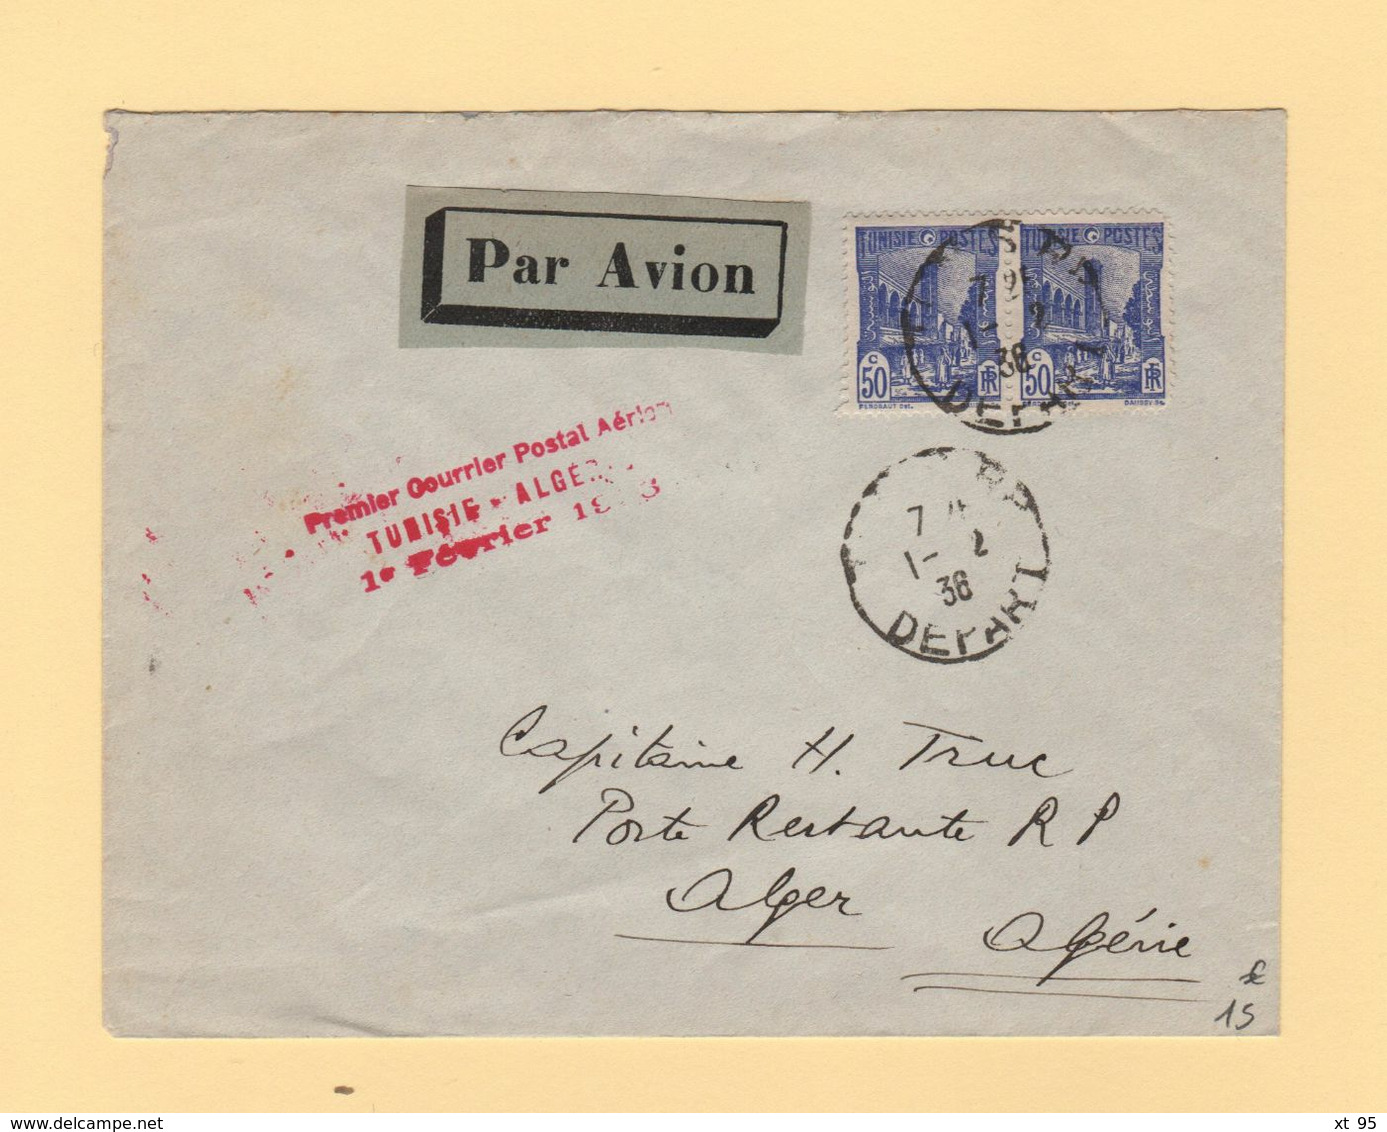 Tunisie - Premier Courrier Postal Aerien Tunisie Algerie - 1er Fevrier 1936 - Poste Aérienne